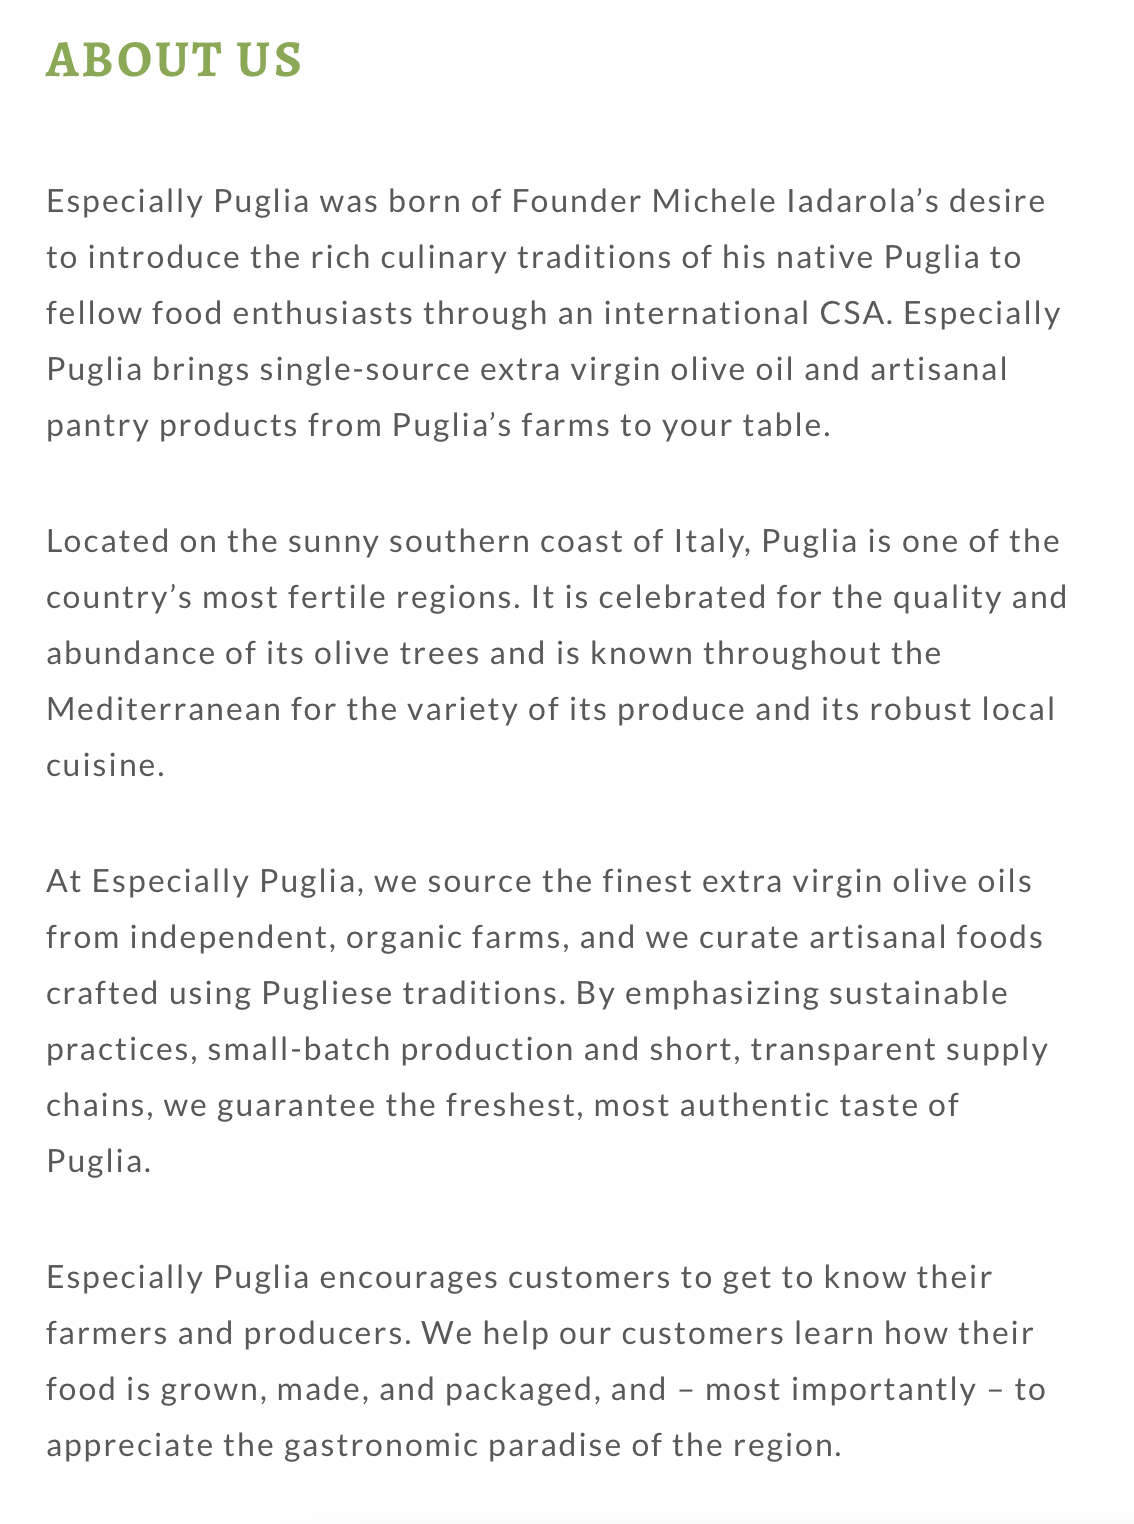 Especially Puglia Website Copy